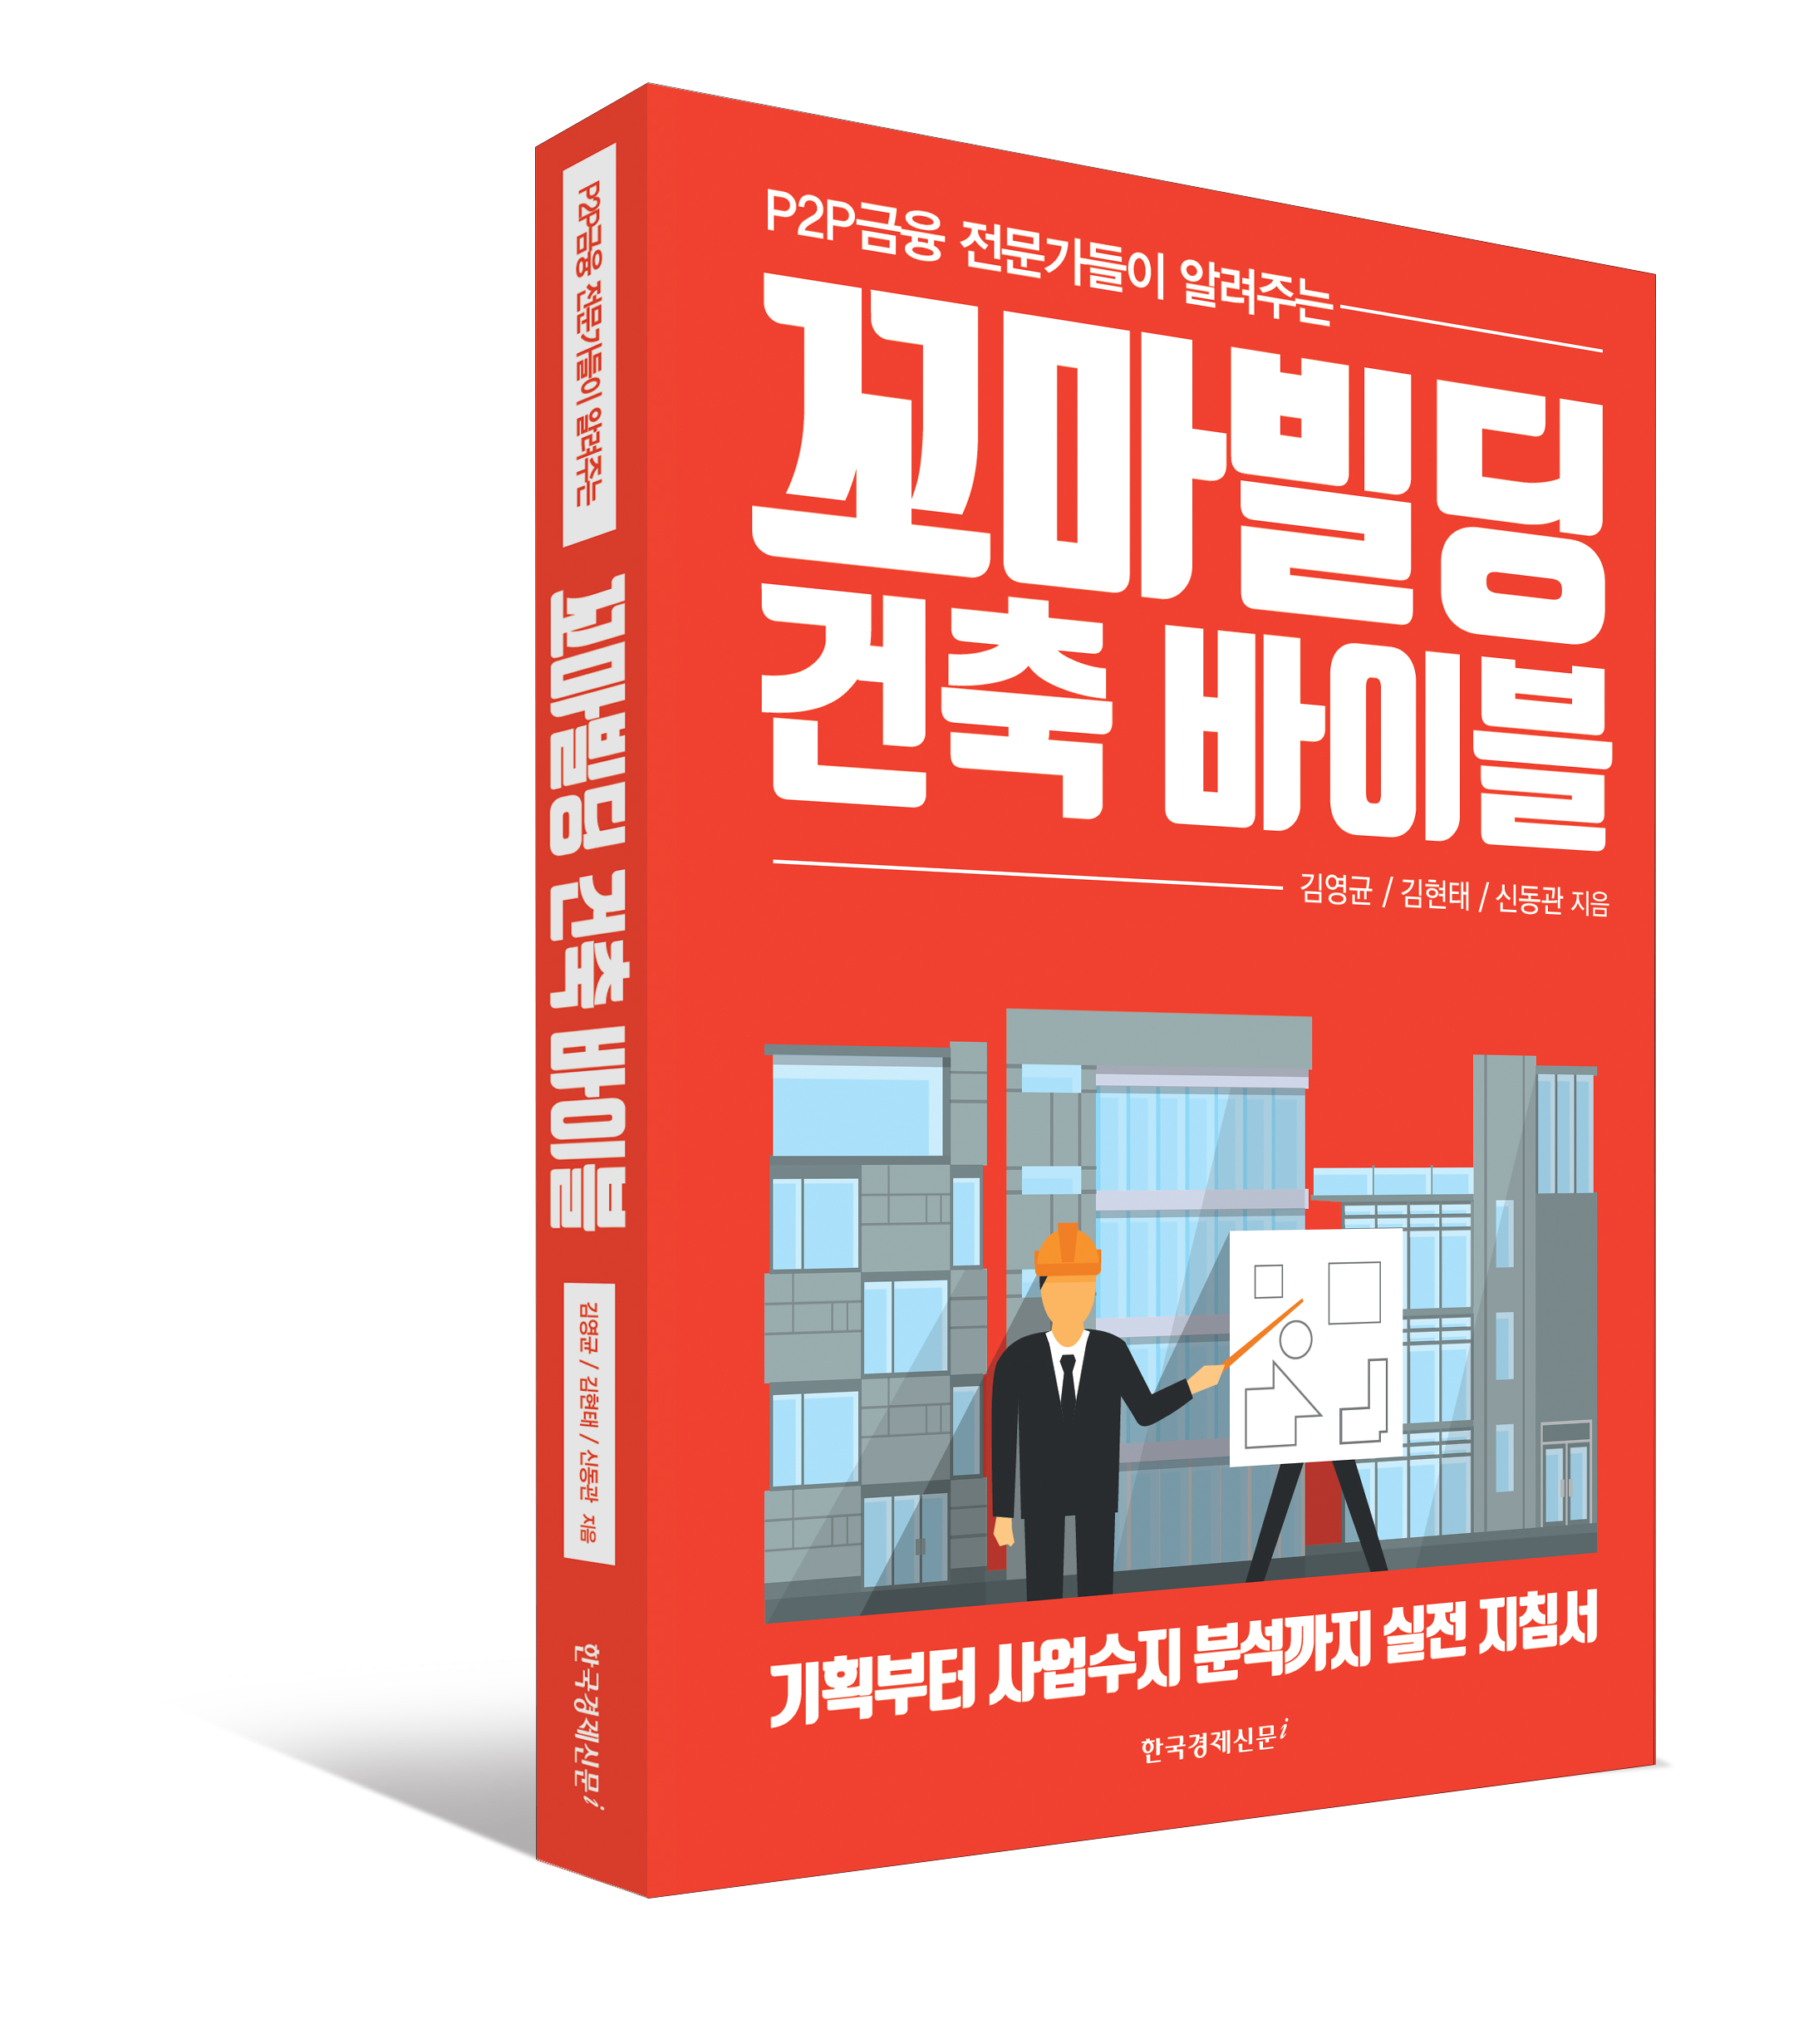 꼬마빌딩 건축 바이블
김영균, 김현태, 신동관 저, 한경BP